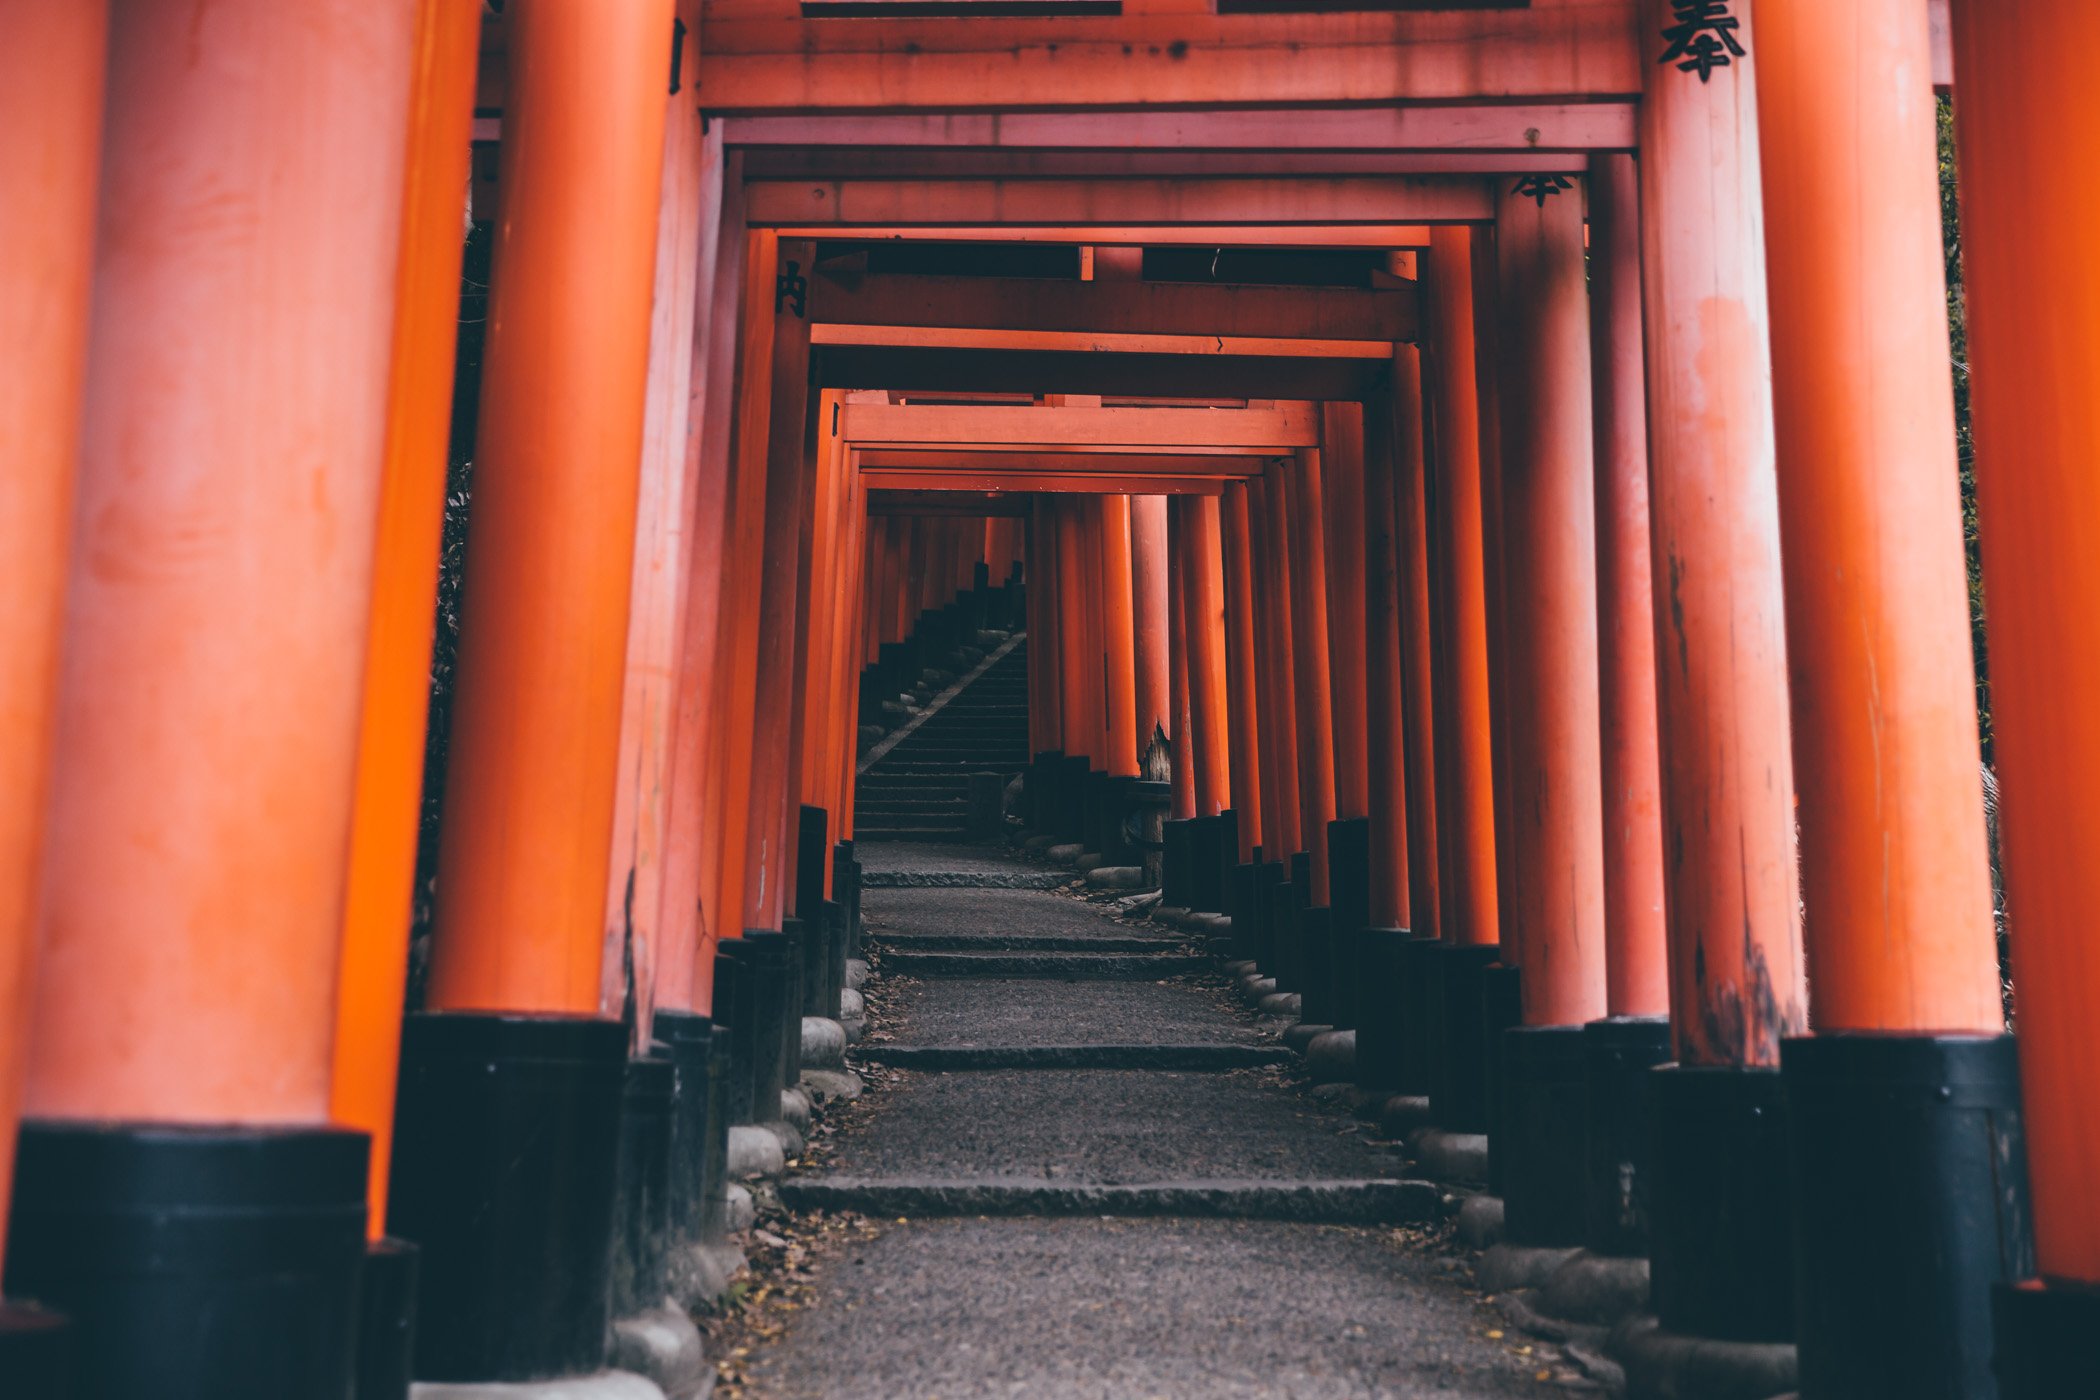 Kyoto Fushimi Inari-Taisha